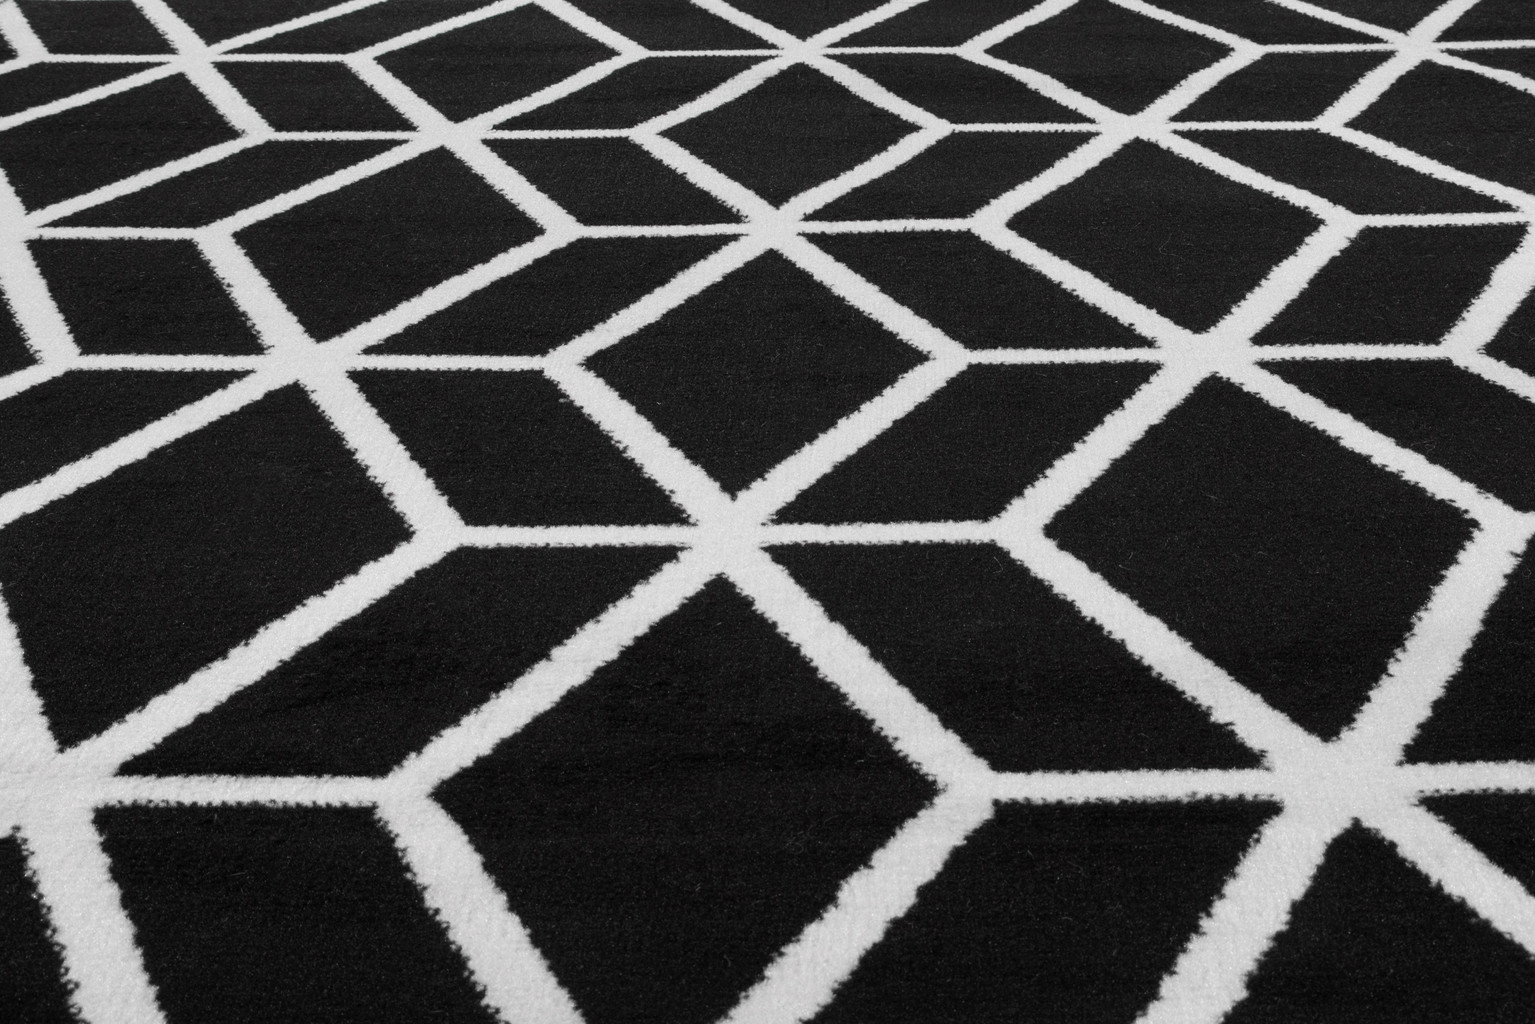 Geometryczny czarny dywan Almas 13 w białą linię, siatkę, romby nowoczesny styl - Carpetforyou zdjęcie 4